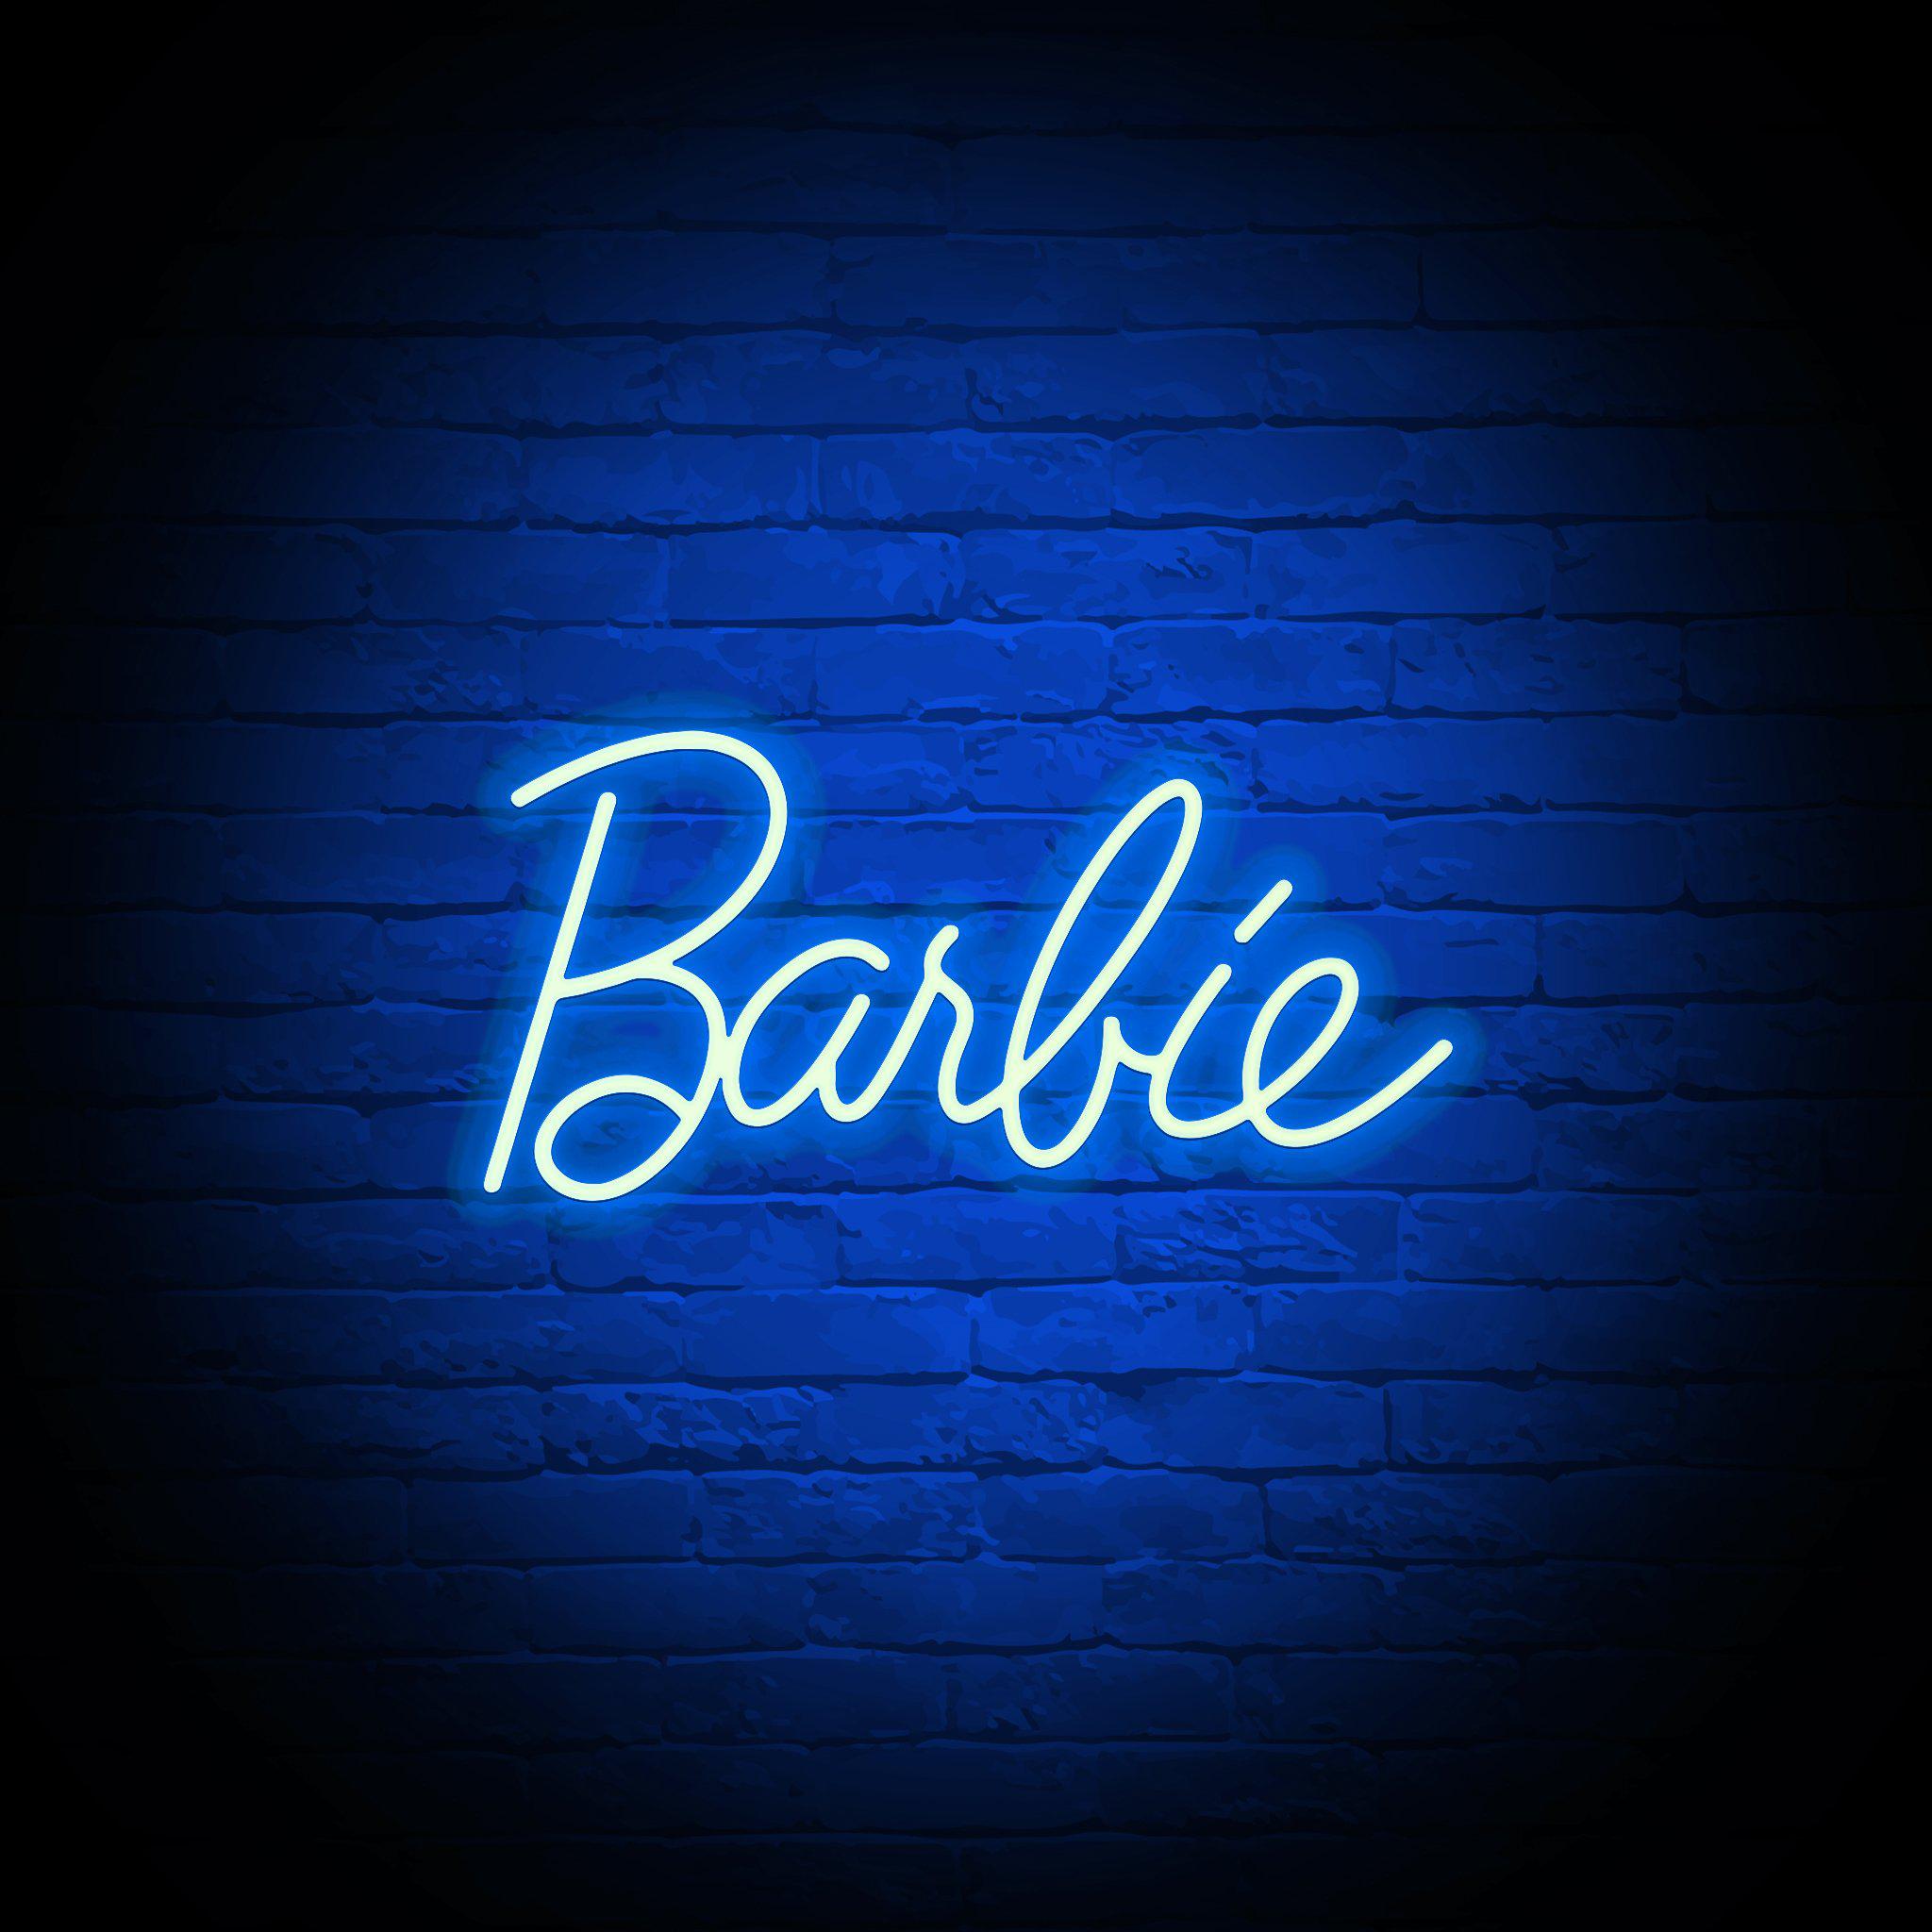 'BARBIE' NEON SIGN